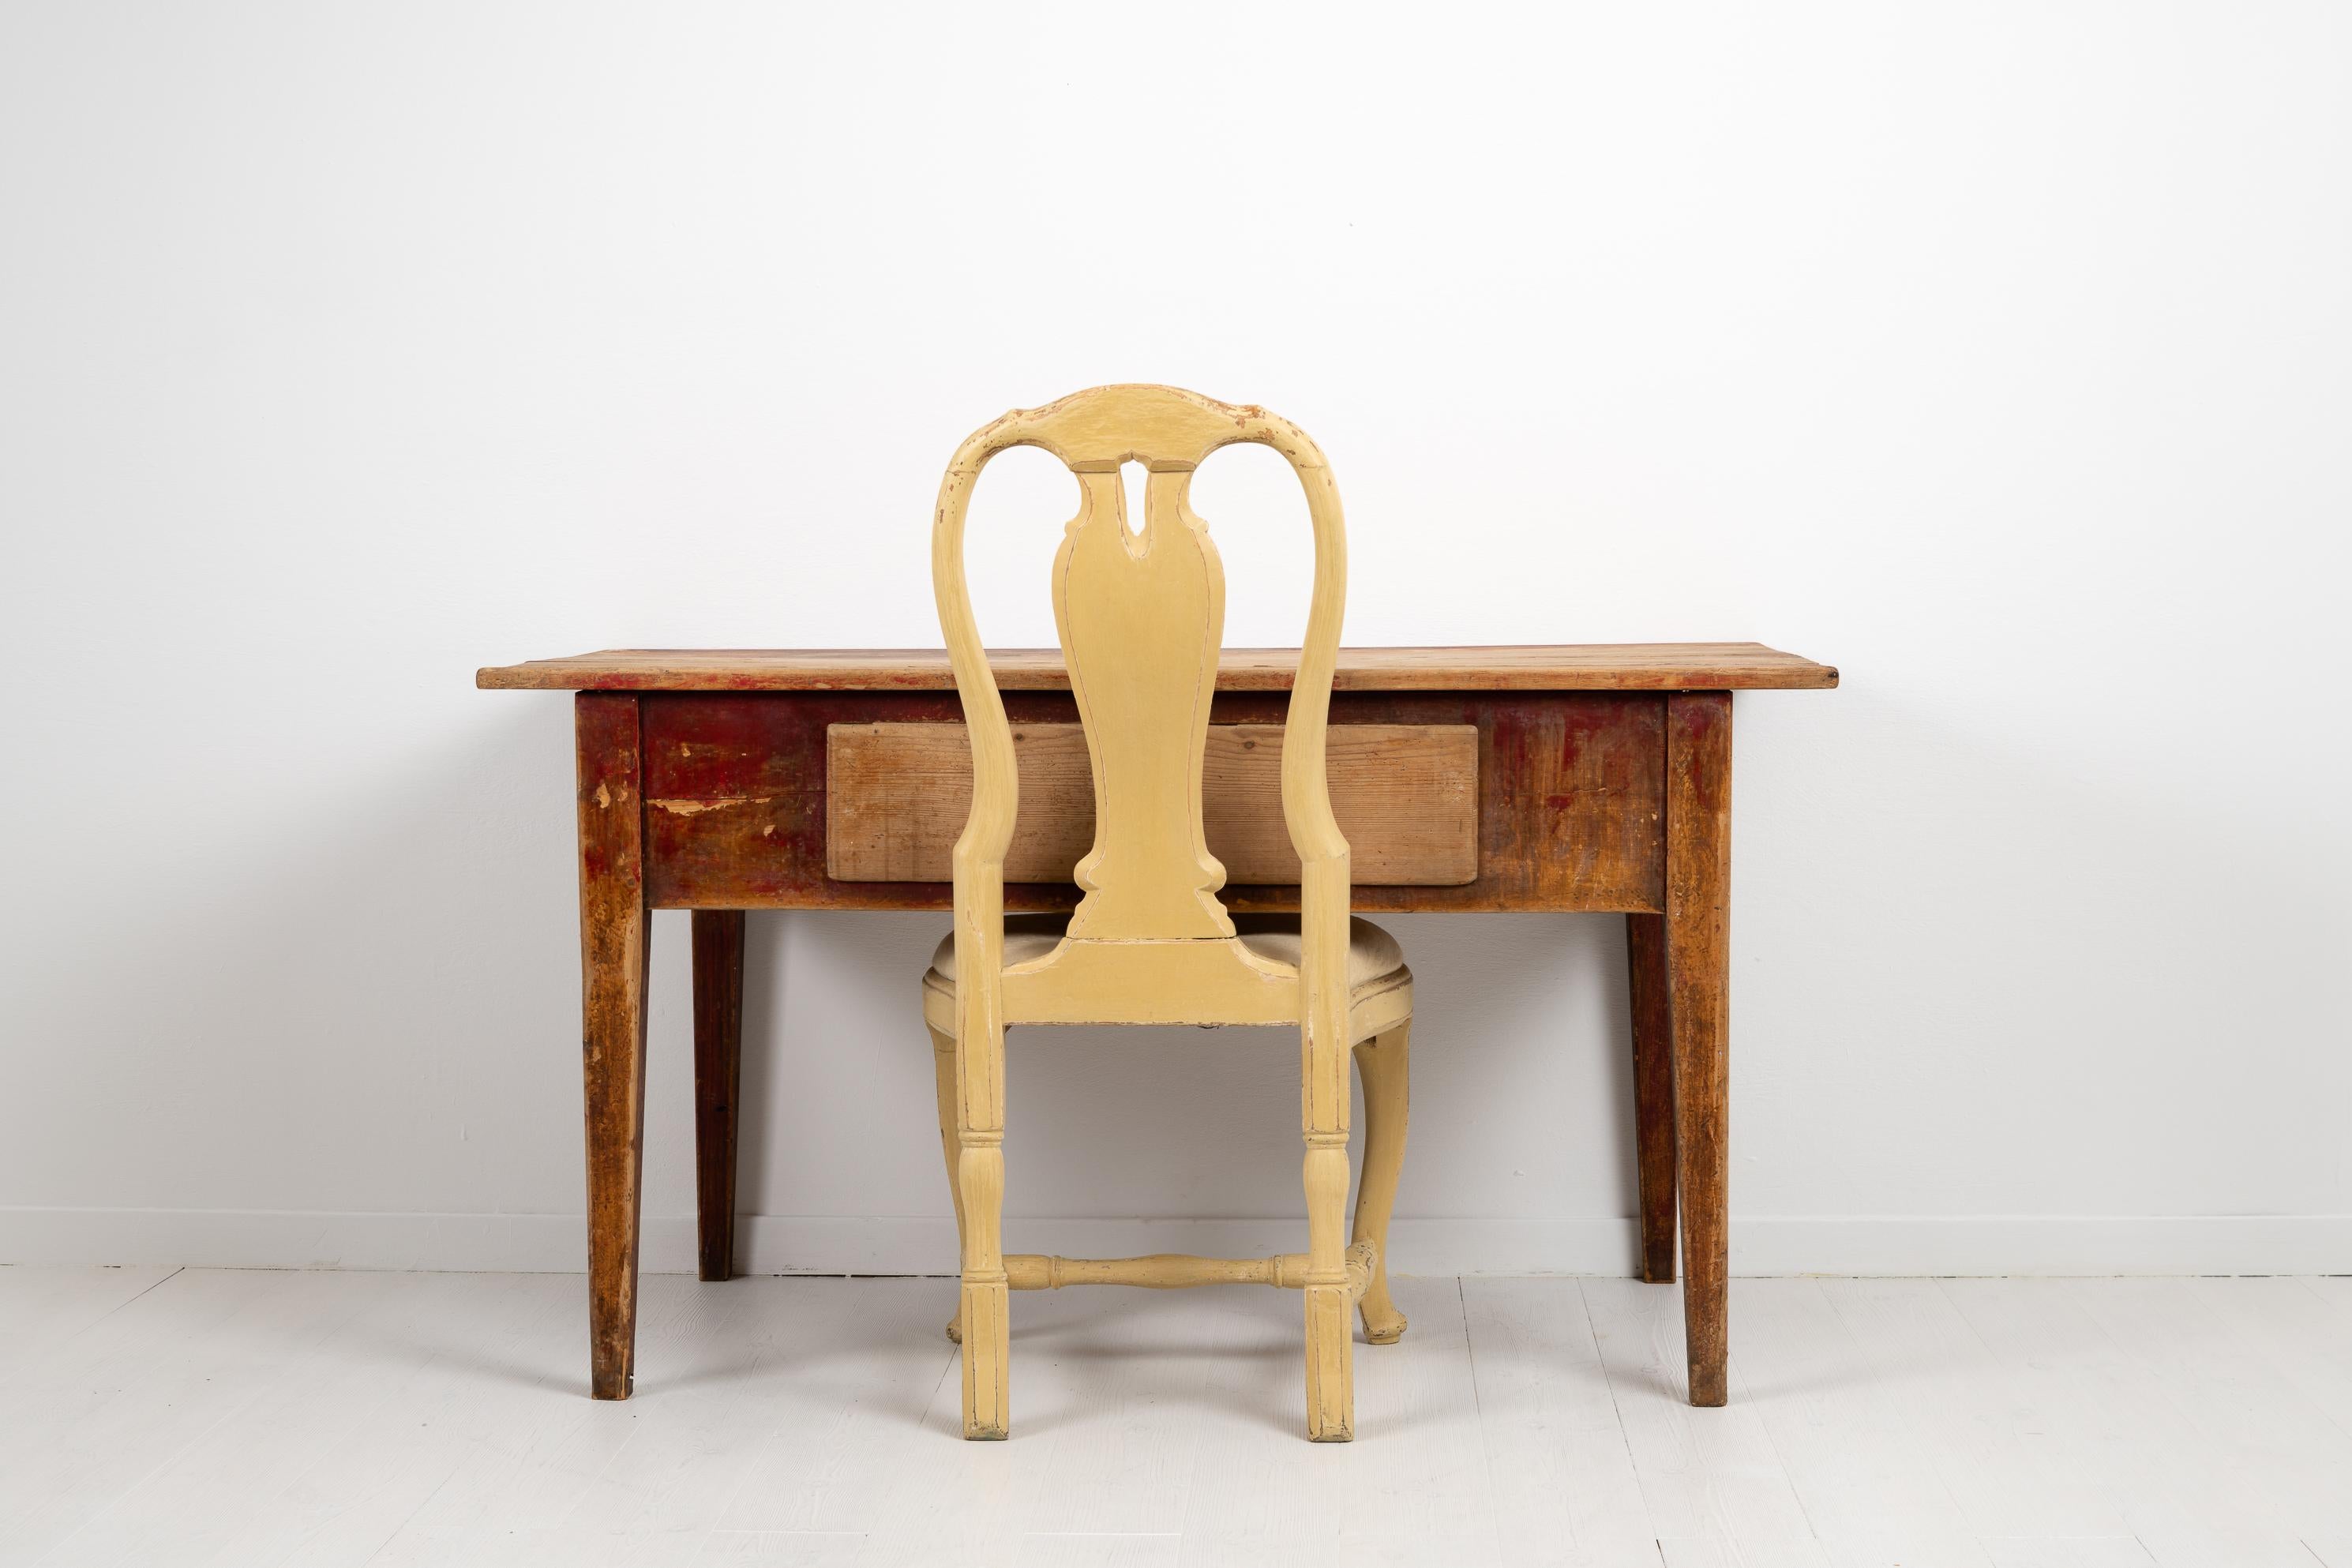 Schwedischer Arbeitstisch im gustavianischen Stil aus den frühen 1800er Jahren, wahrscheinlich aus den Jahren zwischen 1810 und 1820. Der Tisch stammt aus Nordschweden und ist ein starkes Stück mit einer stabilen Konstruktion und massivem Holz - ein